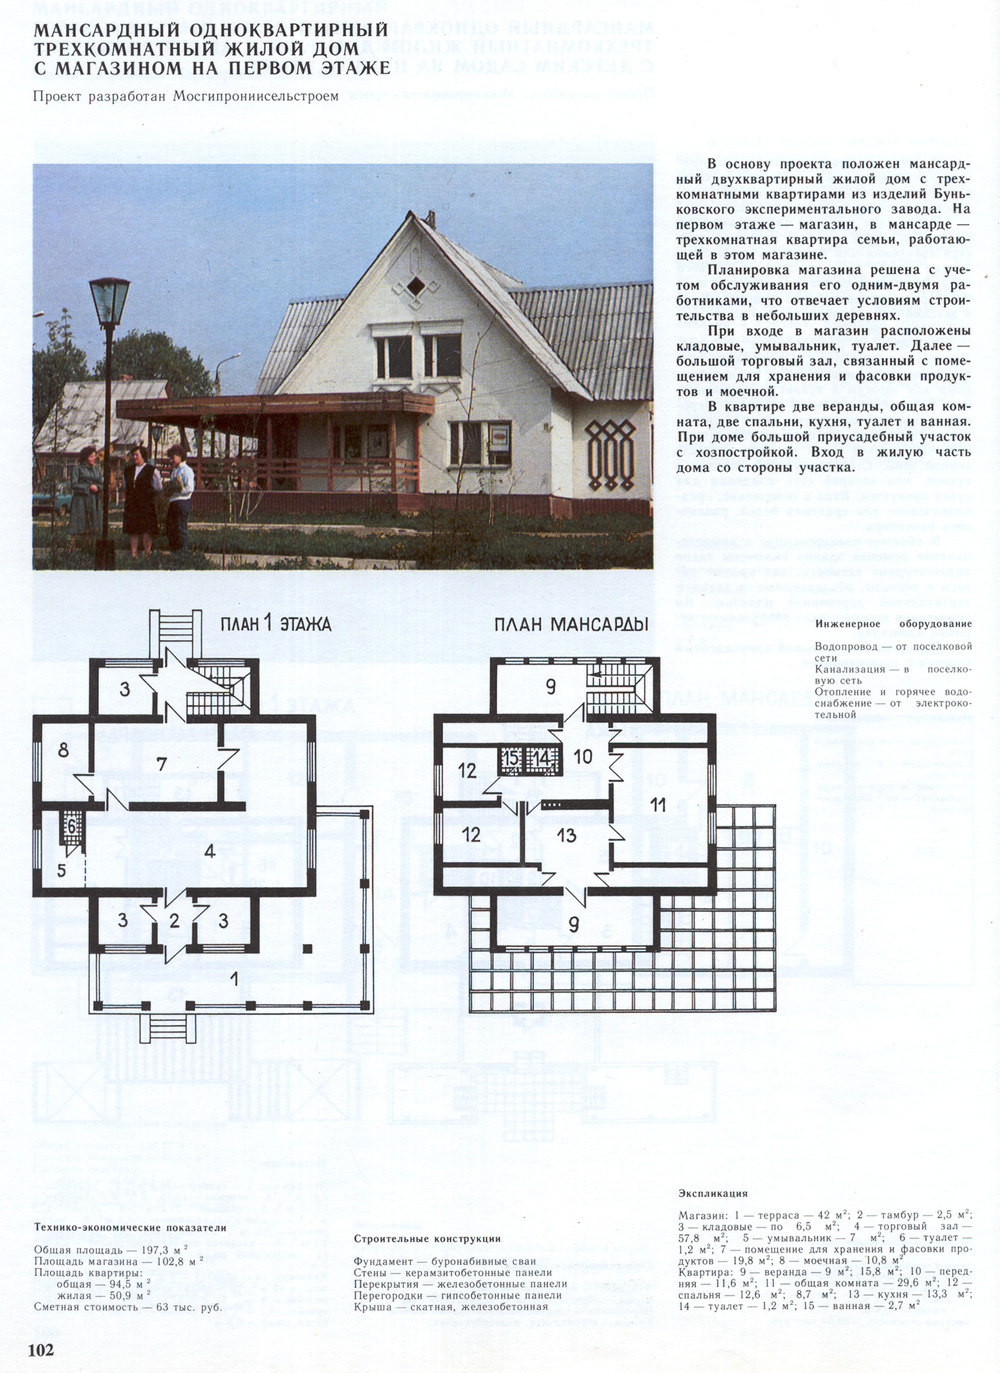 Проект Мансардный одноквартирный трёхкомнатный жилой дом с магазином на первом этаже (проект МосгипроНИИсельстроя) — Чертежи и планировки